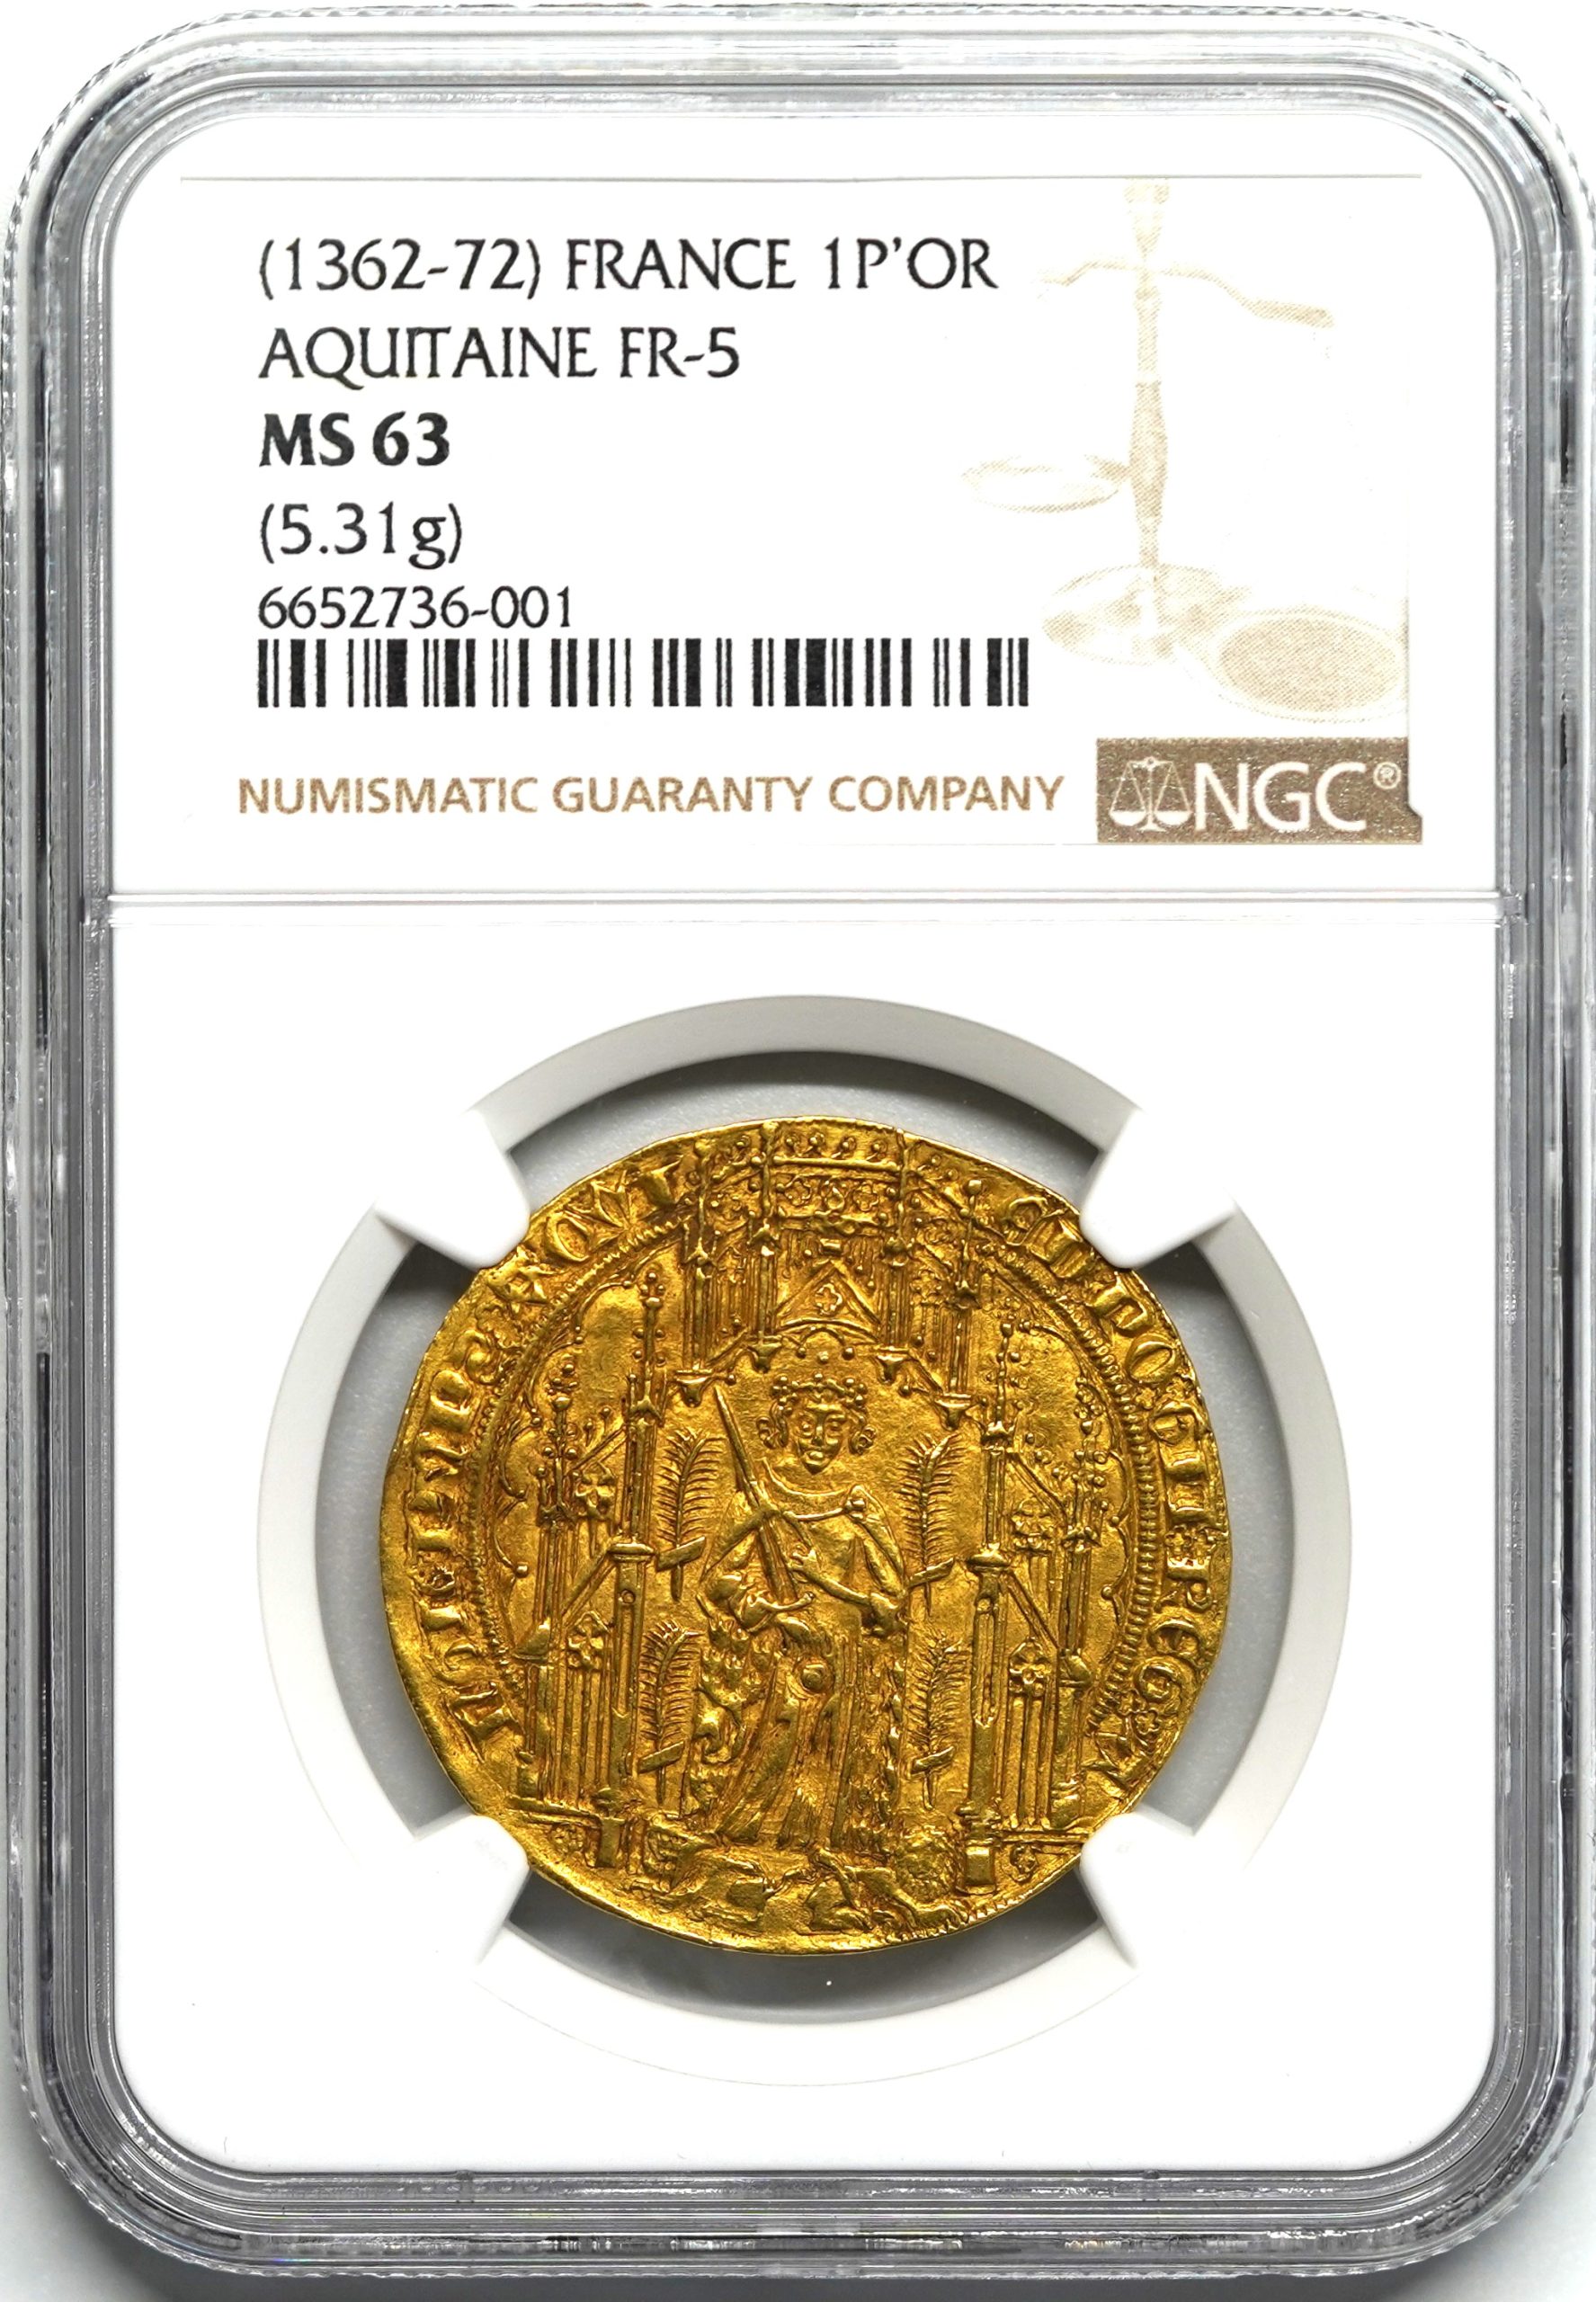 Sold】1362-72年 フランス エドワード黒太子 パビロン金貨 MS63 NGC 